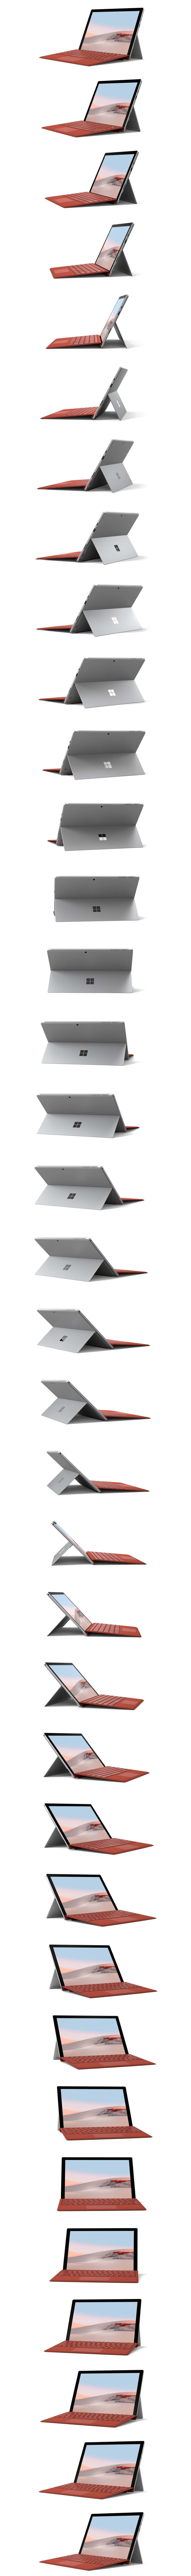 Surface Pro 7 360º-rotatie